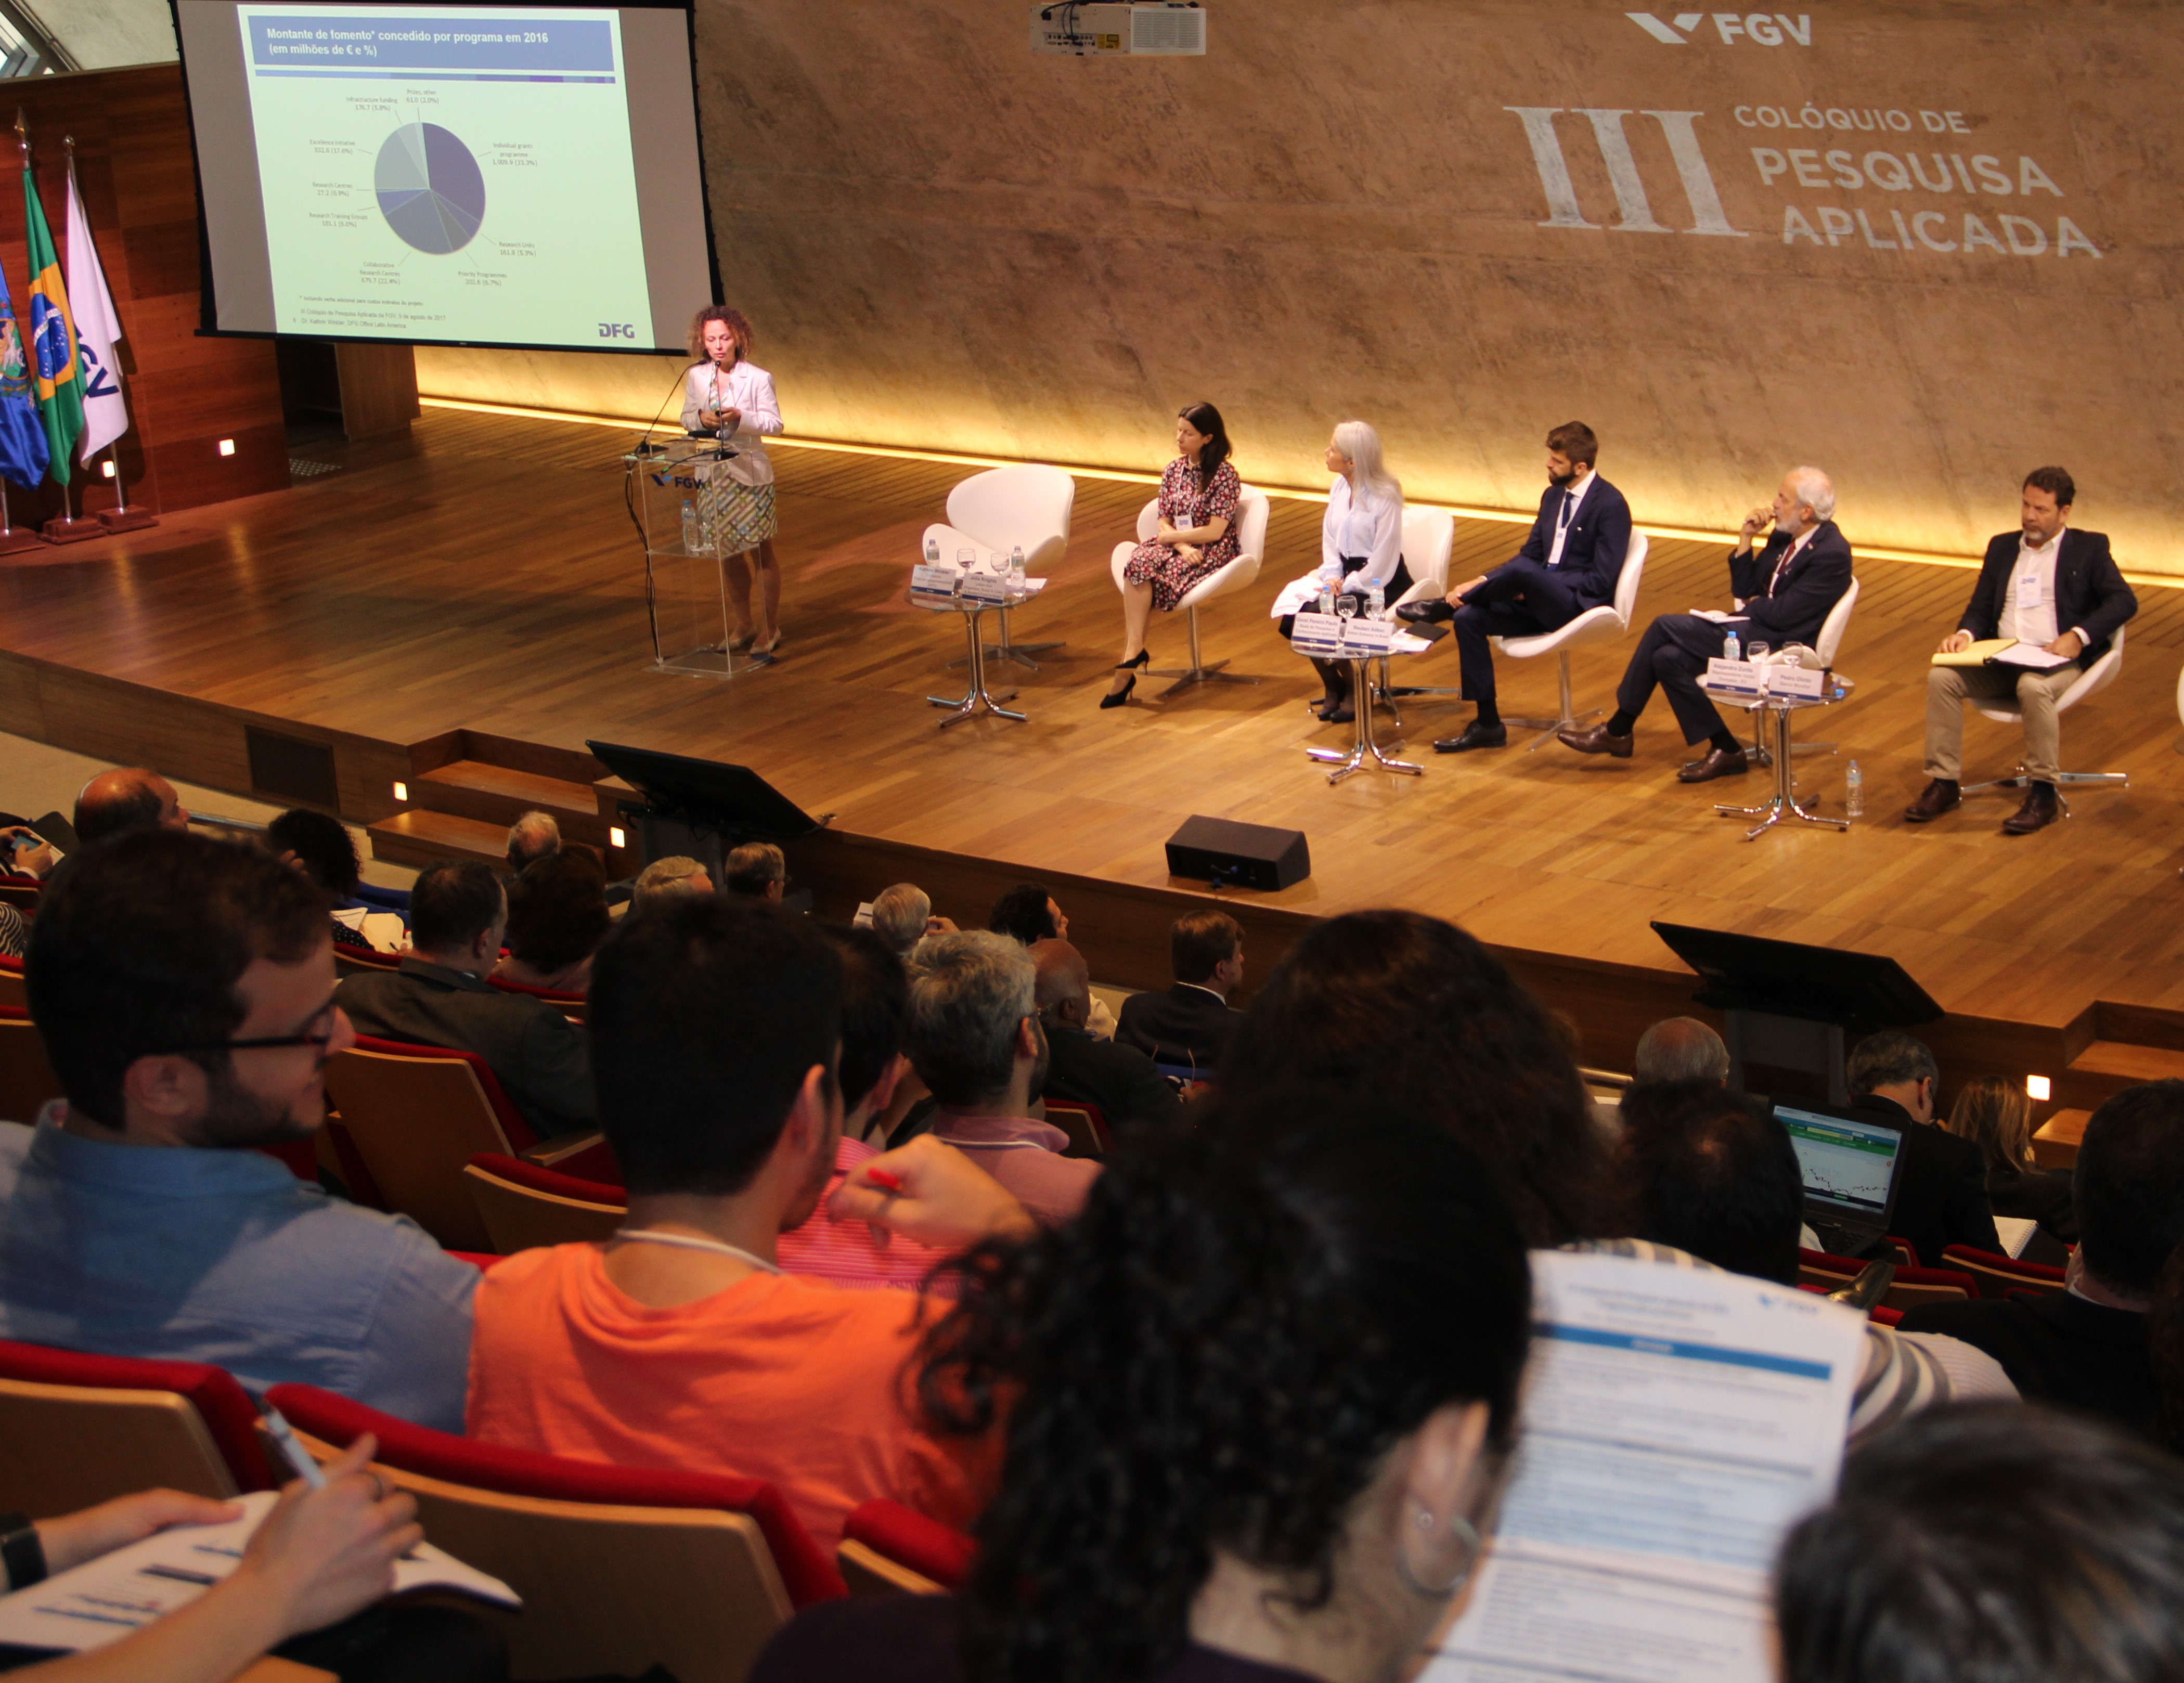 El evento reunió investigadores y docentes de la Fundación Getúlio Vargas